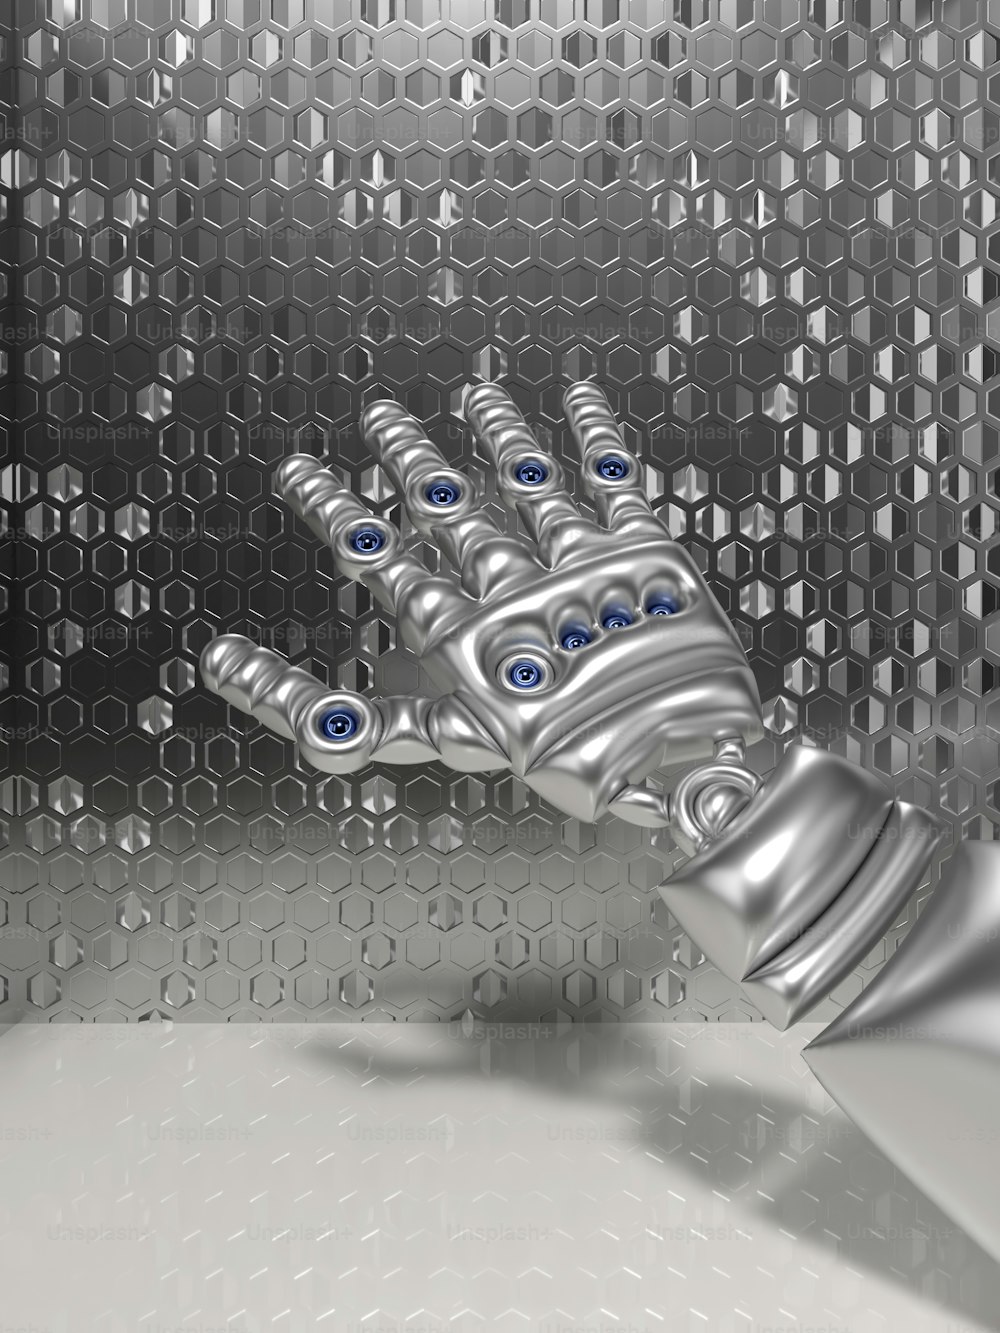 Una mano robotica con gli occhi azzurri è mostrata davanti a uno sfondo metallico